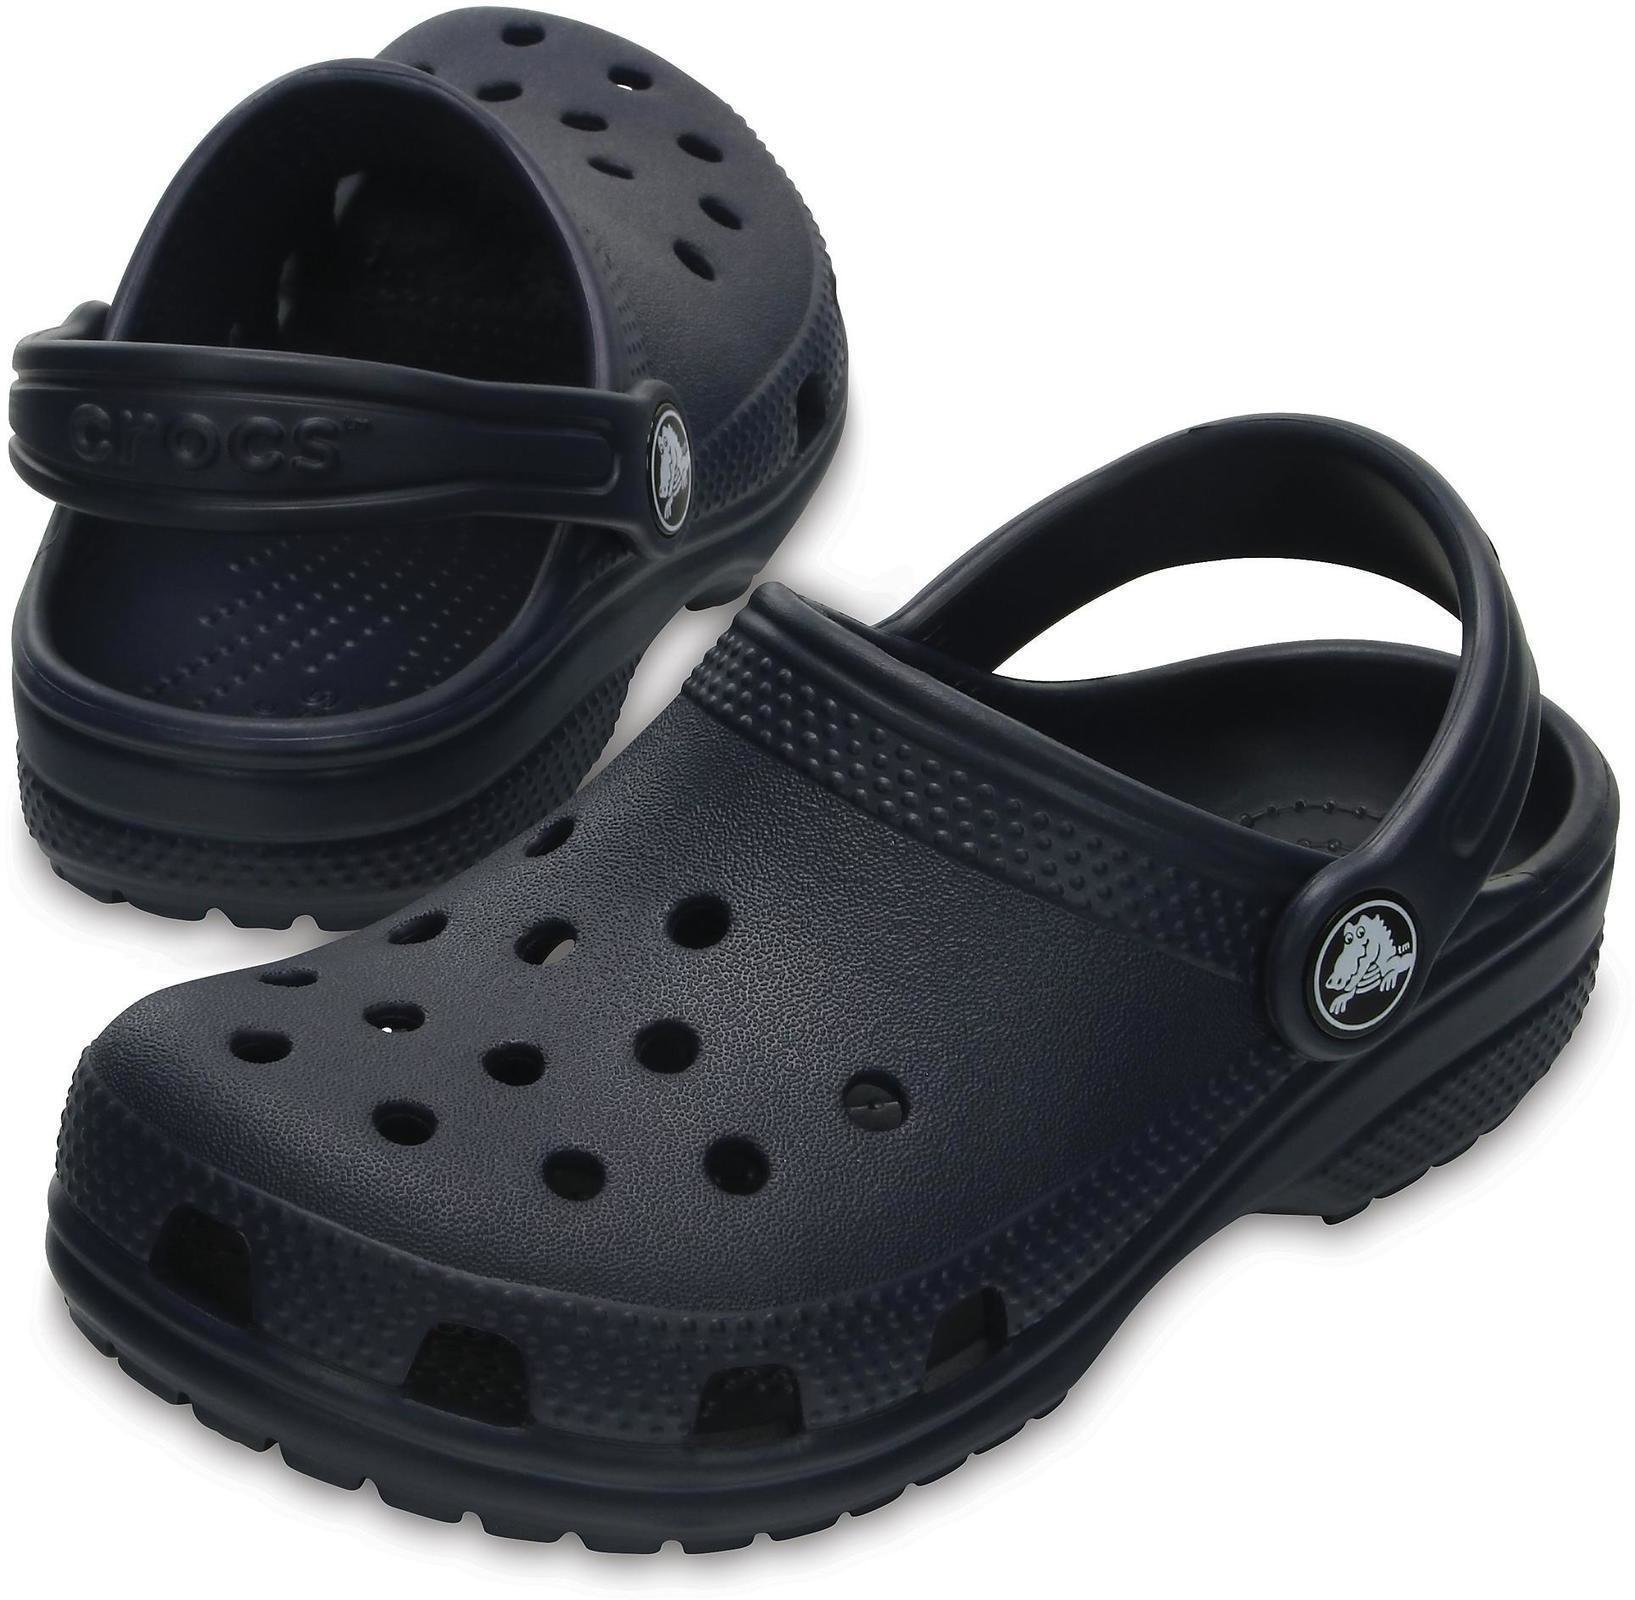 Buty żeglarskie dla dzieci Crocs Kids' Classic Clog Navy 27-28